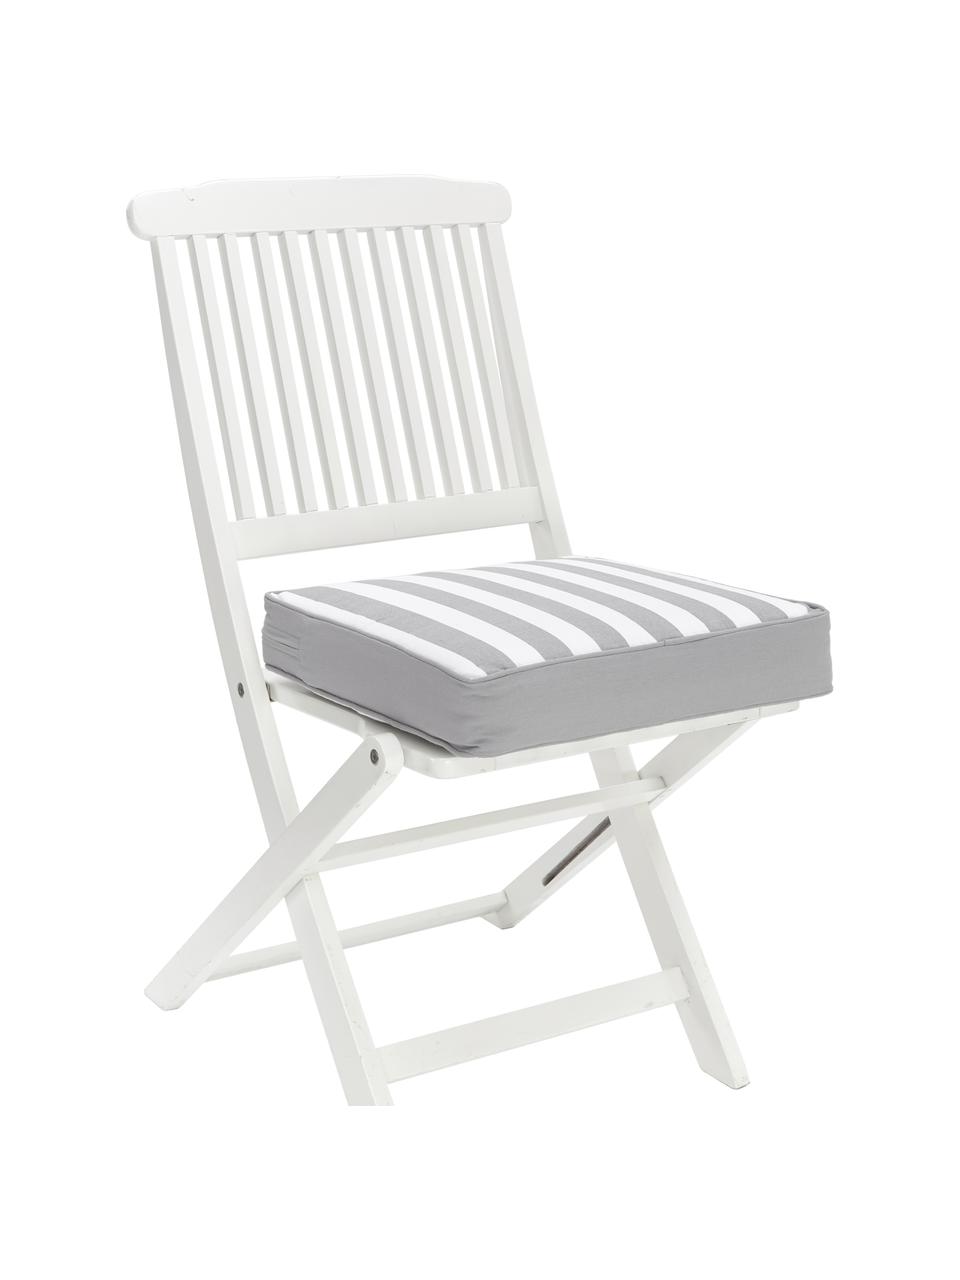 Hohes Sitzkissen Timon, gestreift, Bezug: 100% Baumwolle, Grau, Weiß, B 40 x L 40 cm